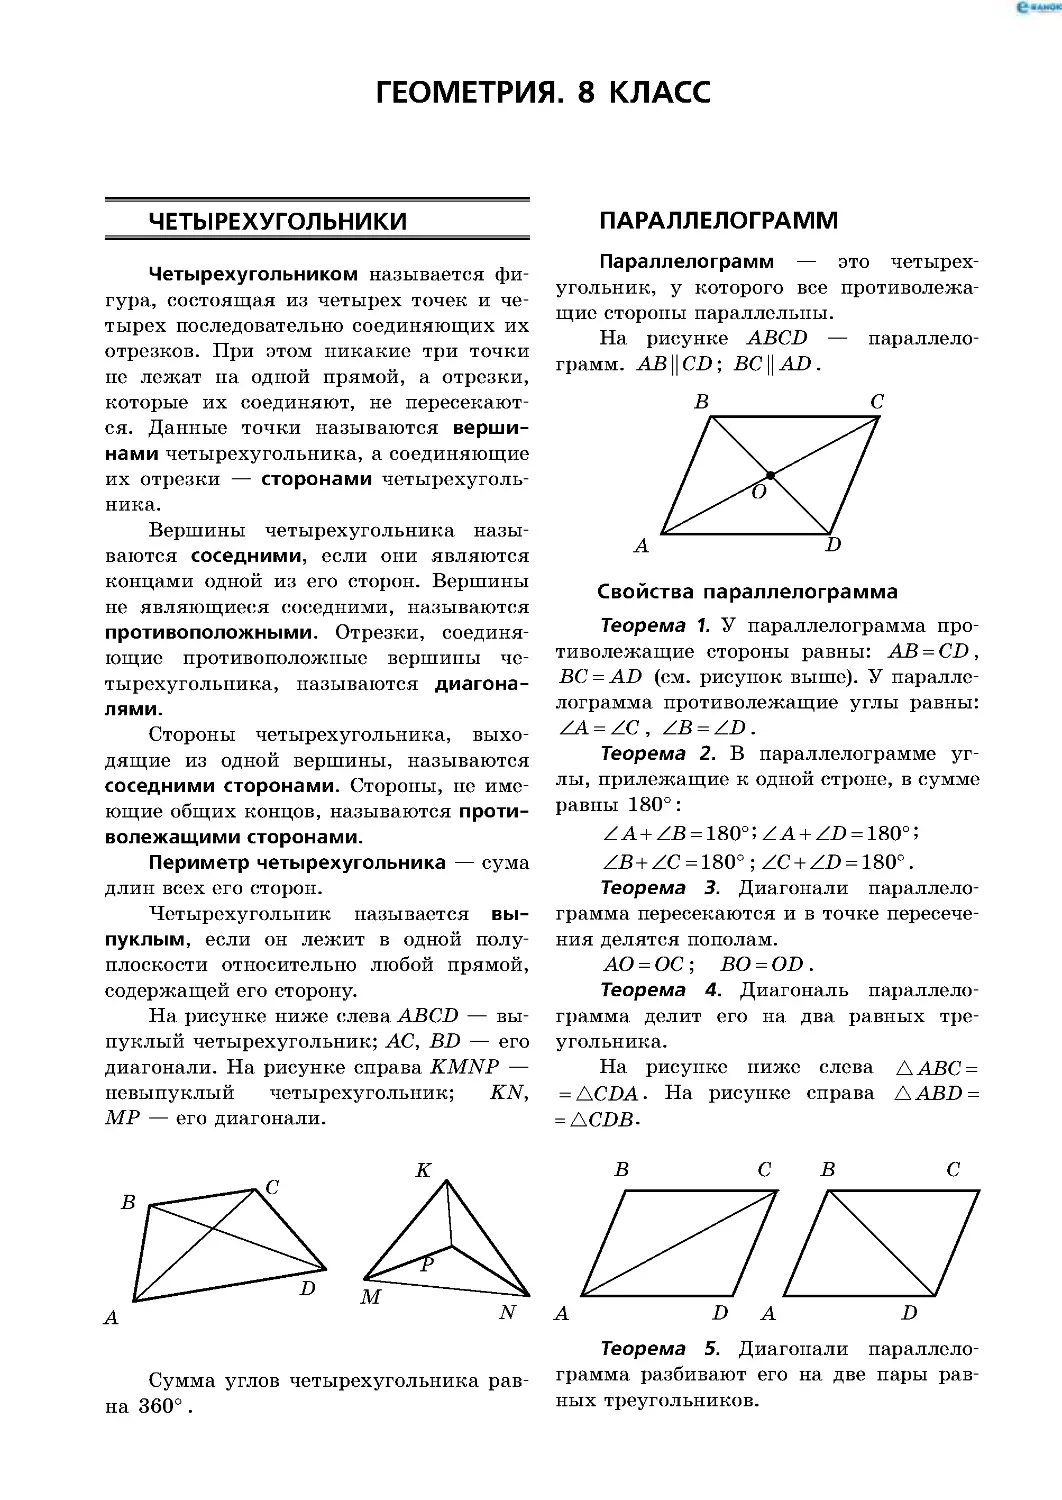 Геометрия. 8 класс
Четырехугольники